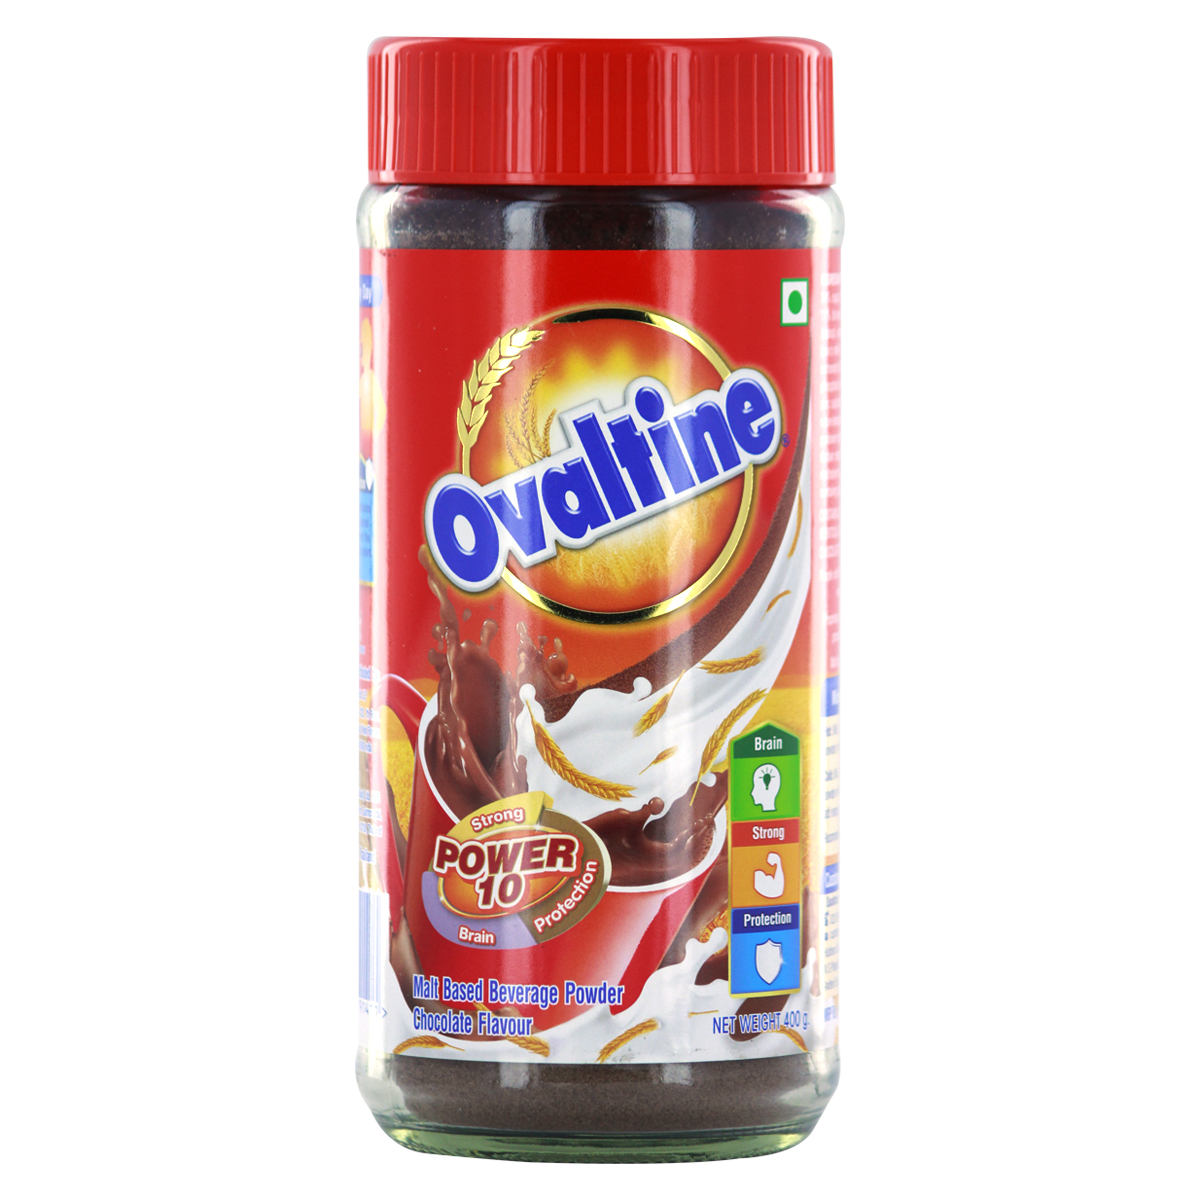 Ovaltine Malt Based Beverage Powder Chocolate flavour